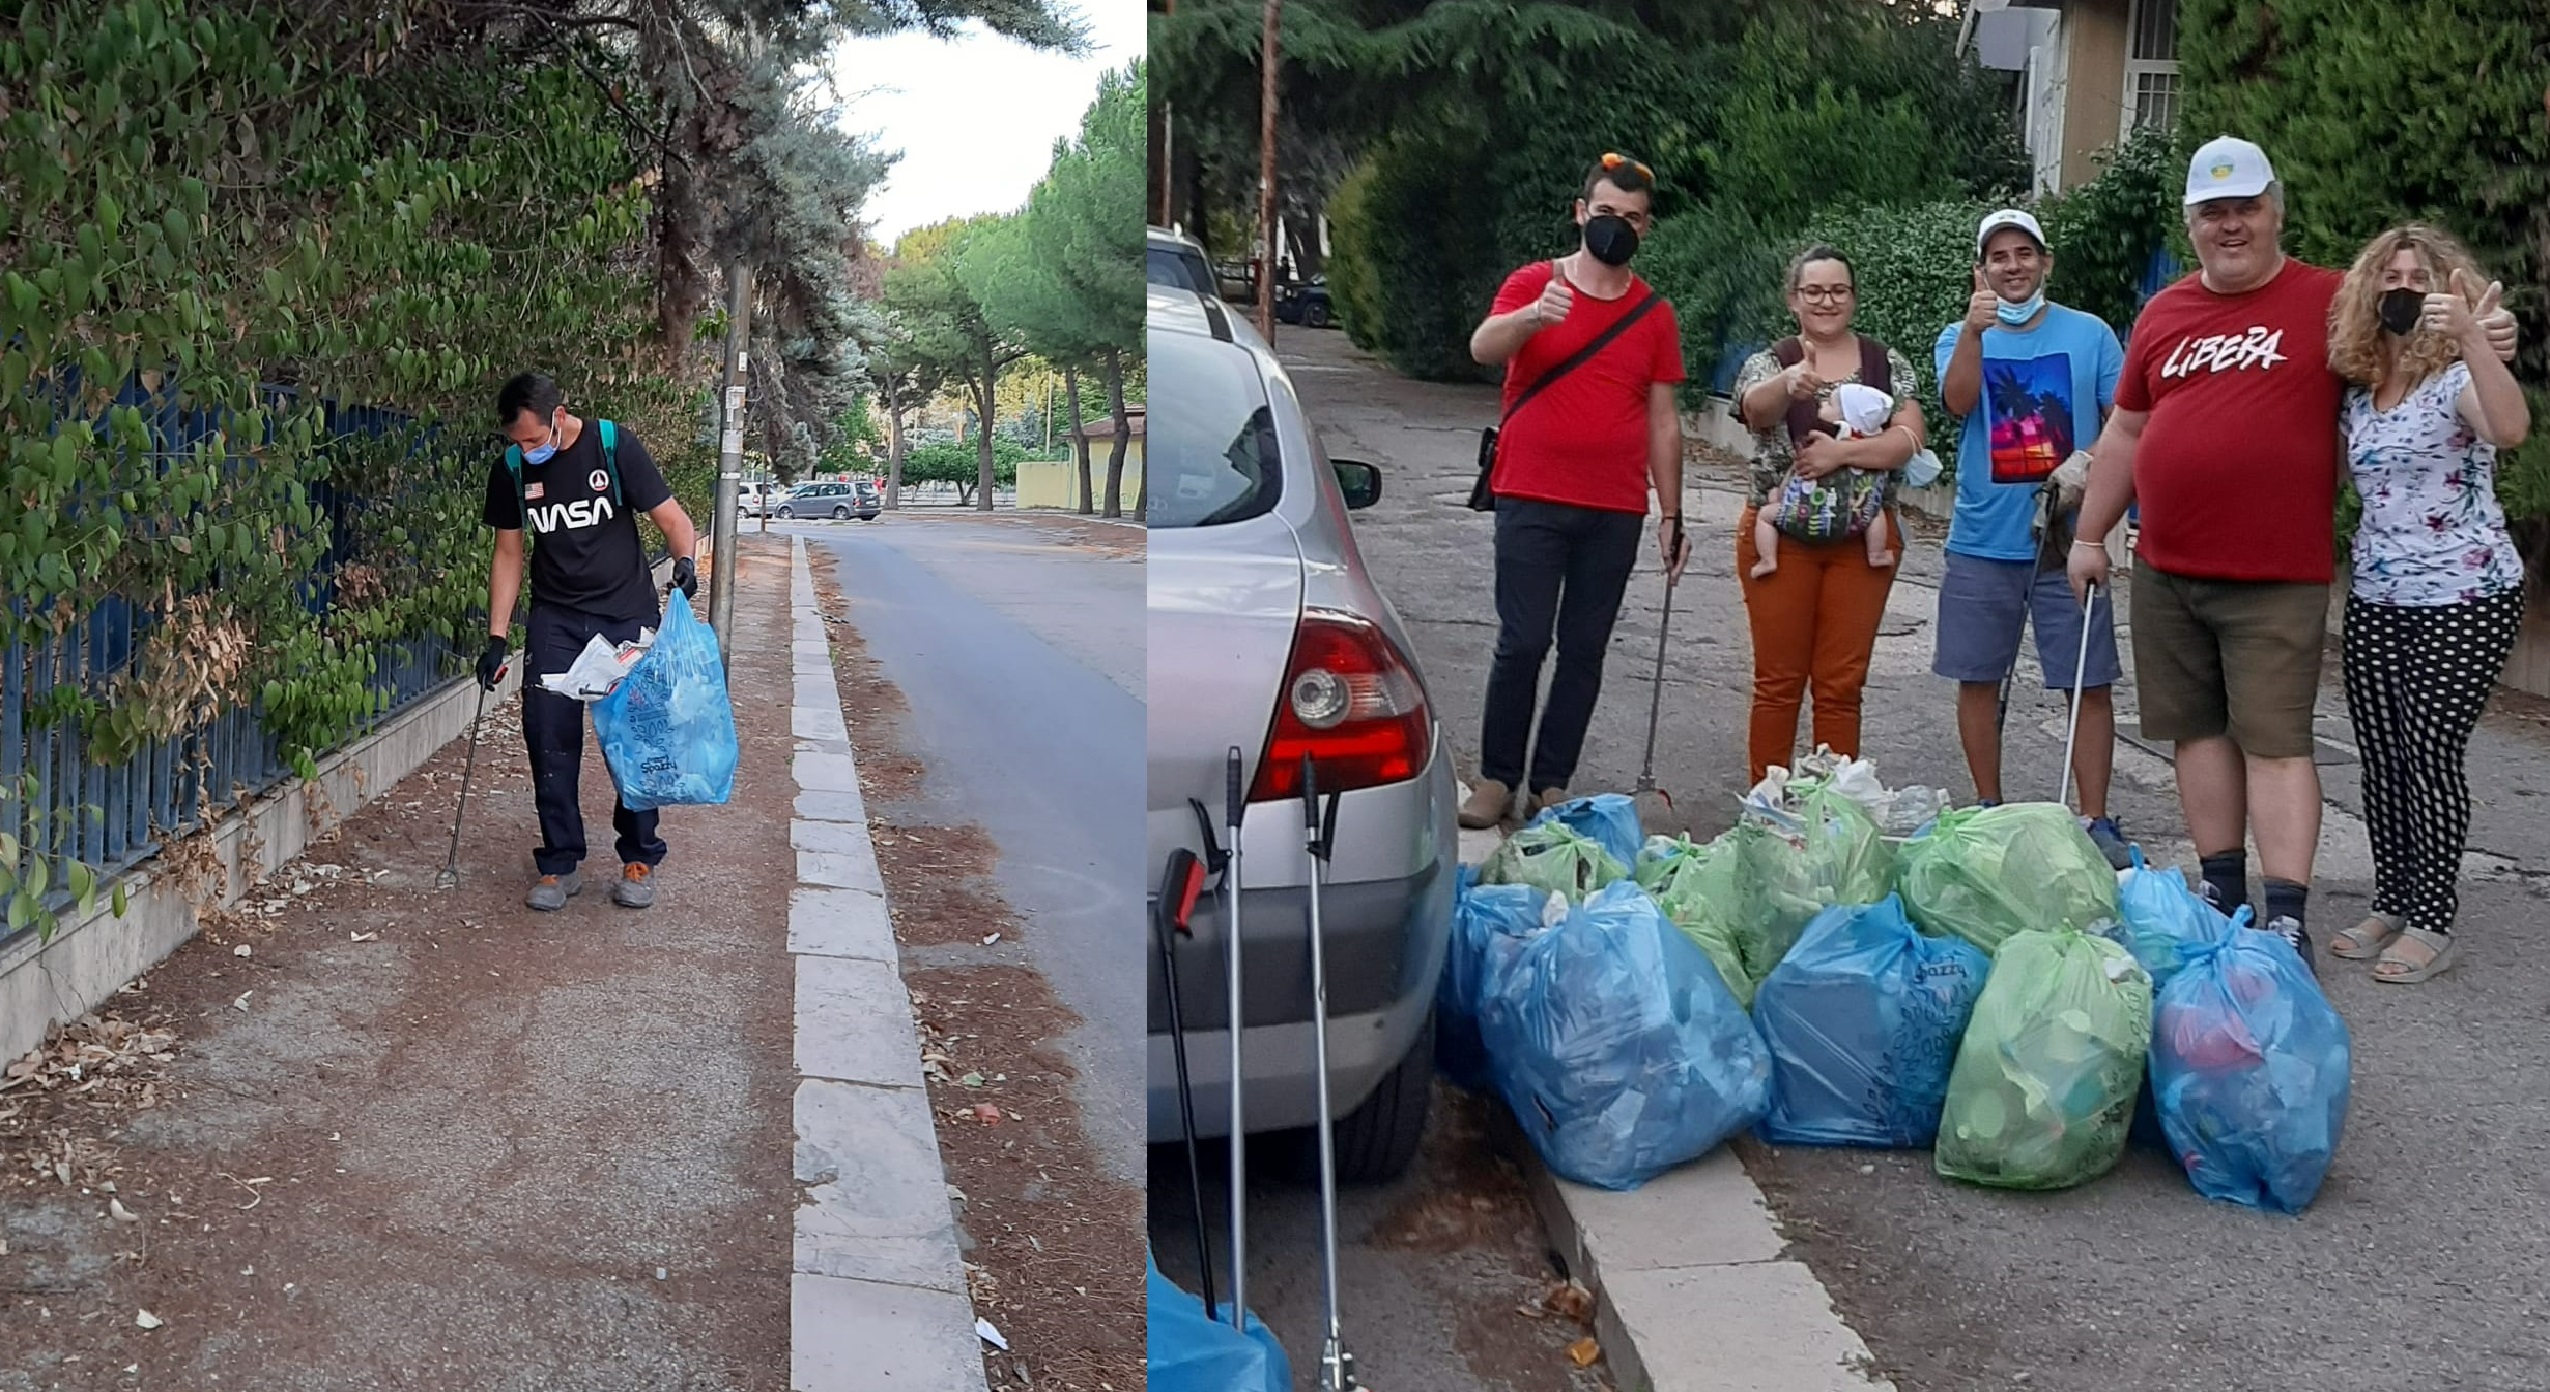 Raccolta rifiuti al parco in zona Pantanella a Foggia 1